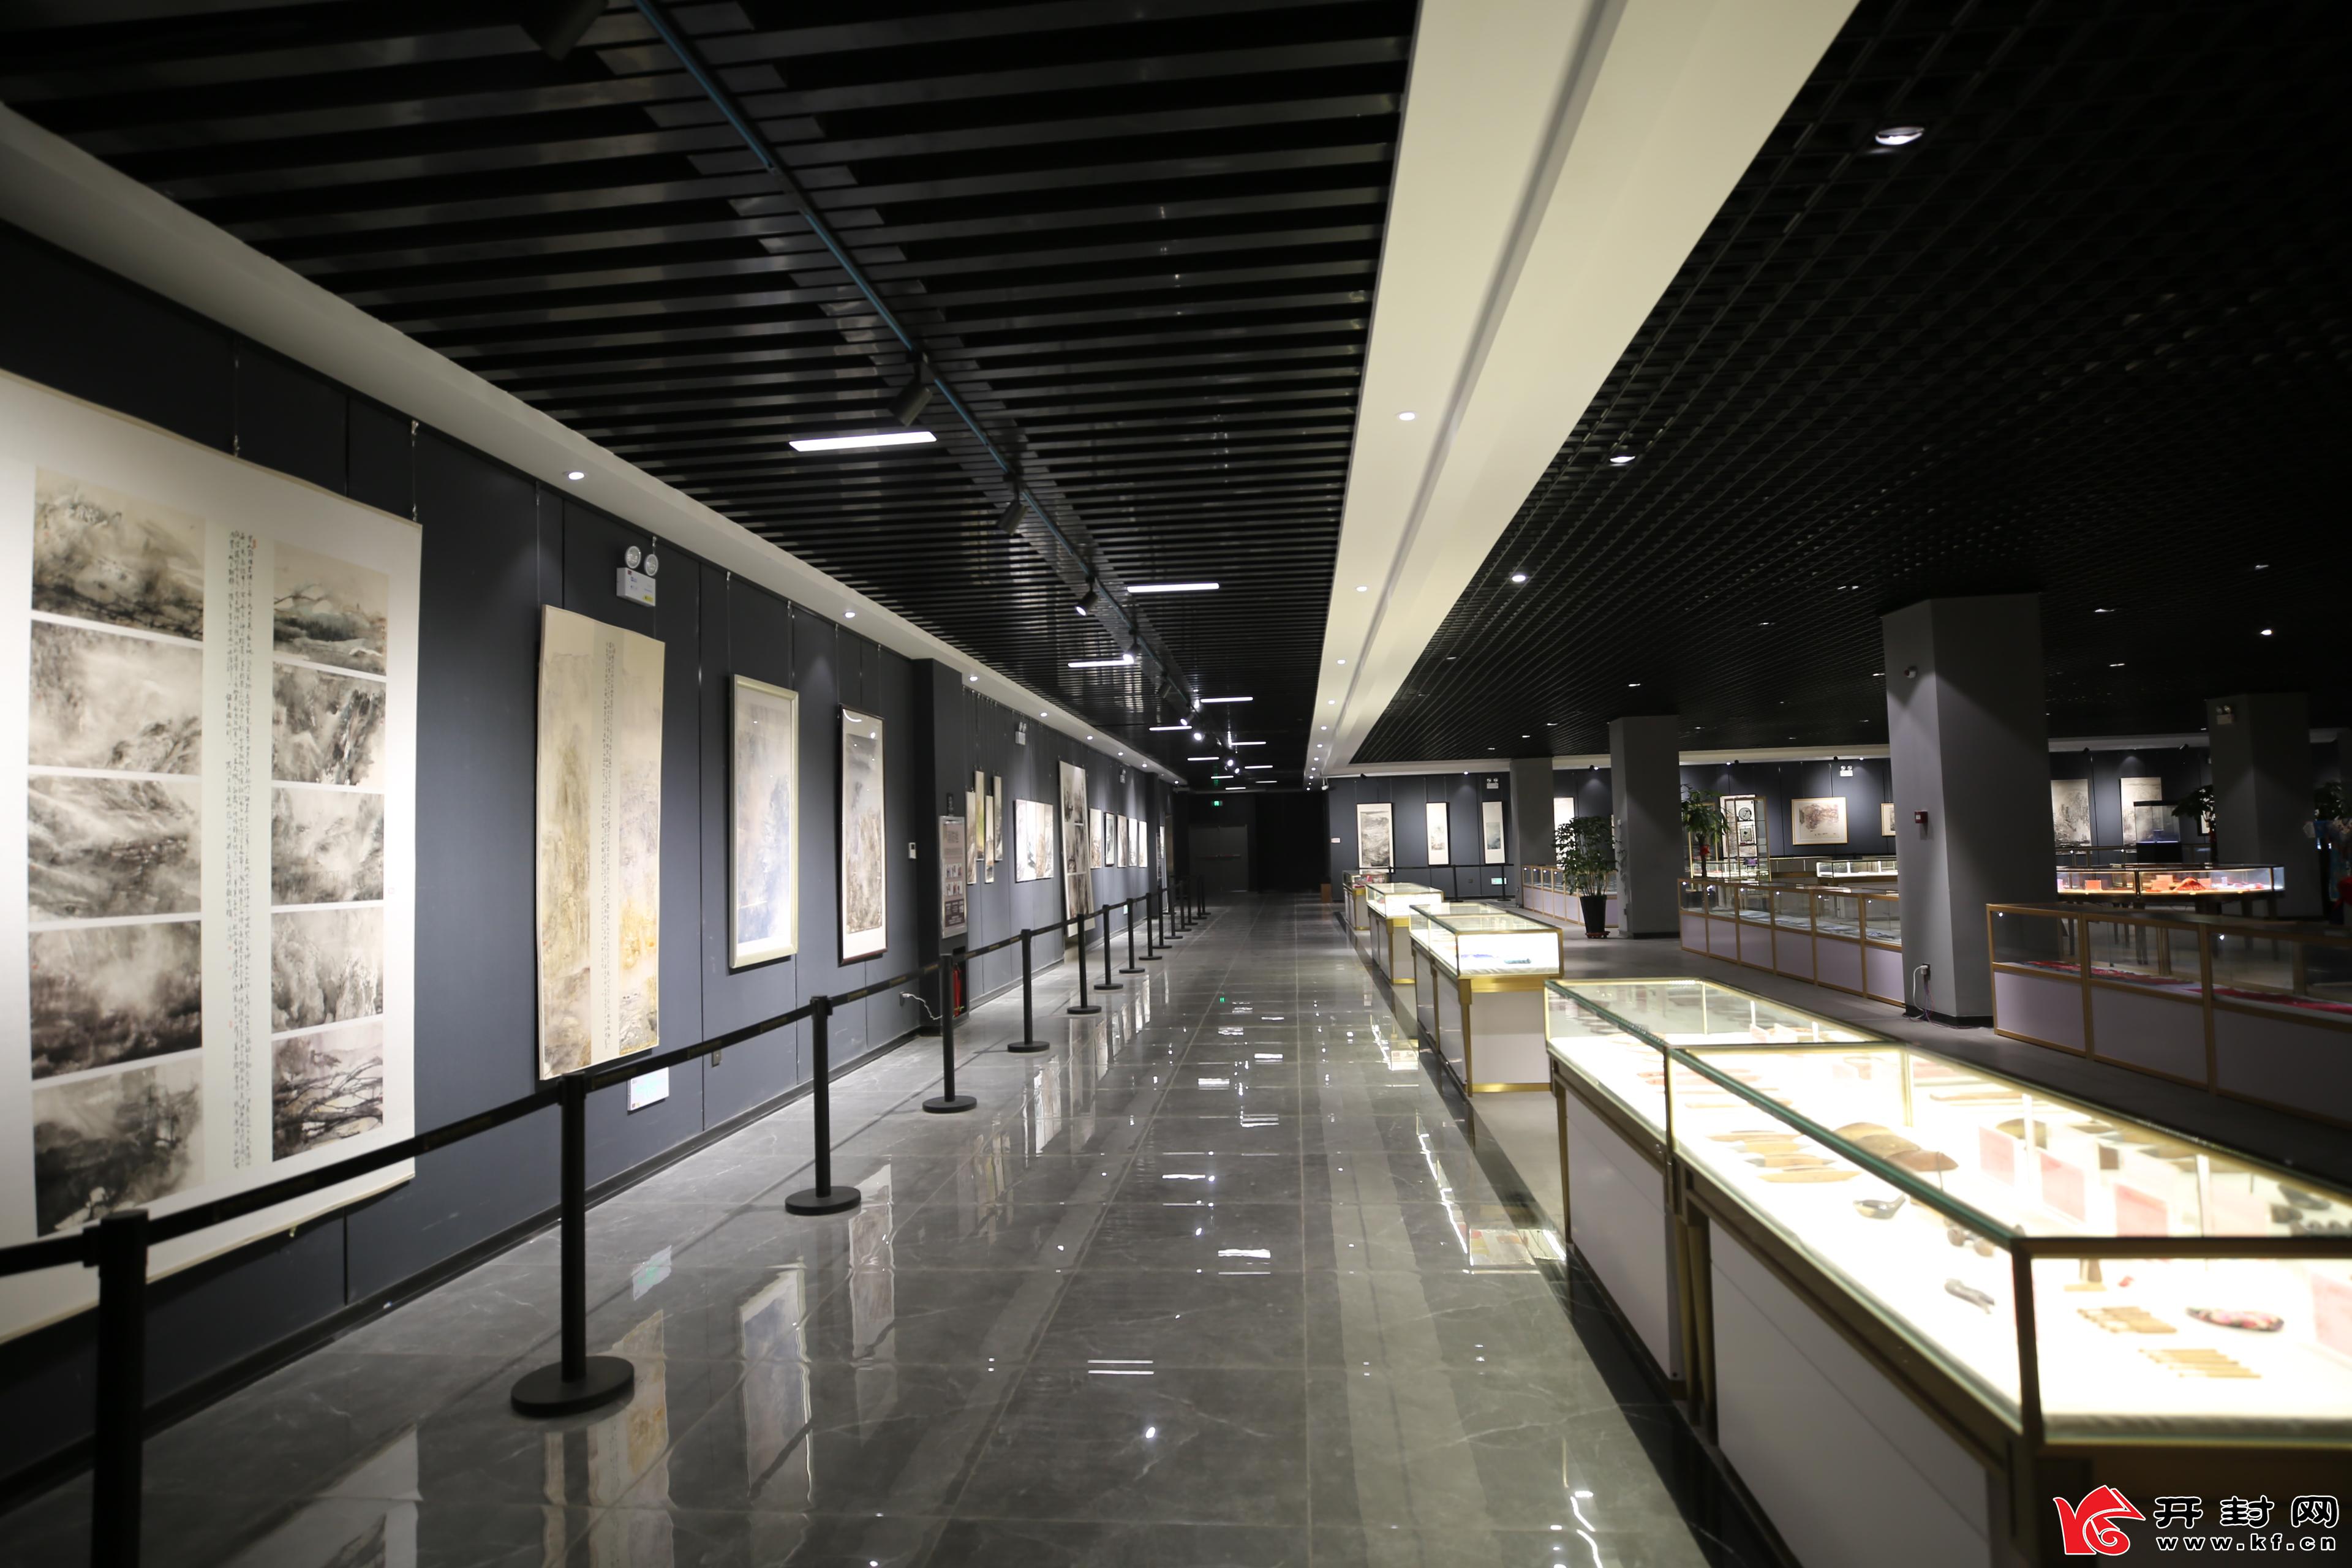 走进中国(河南)自贸区国际艺术品保税仓艺术展馆内,一楼富有时代气息